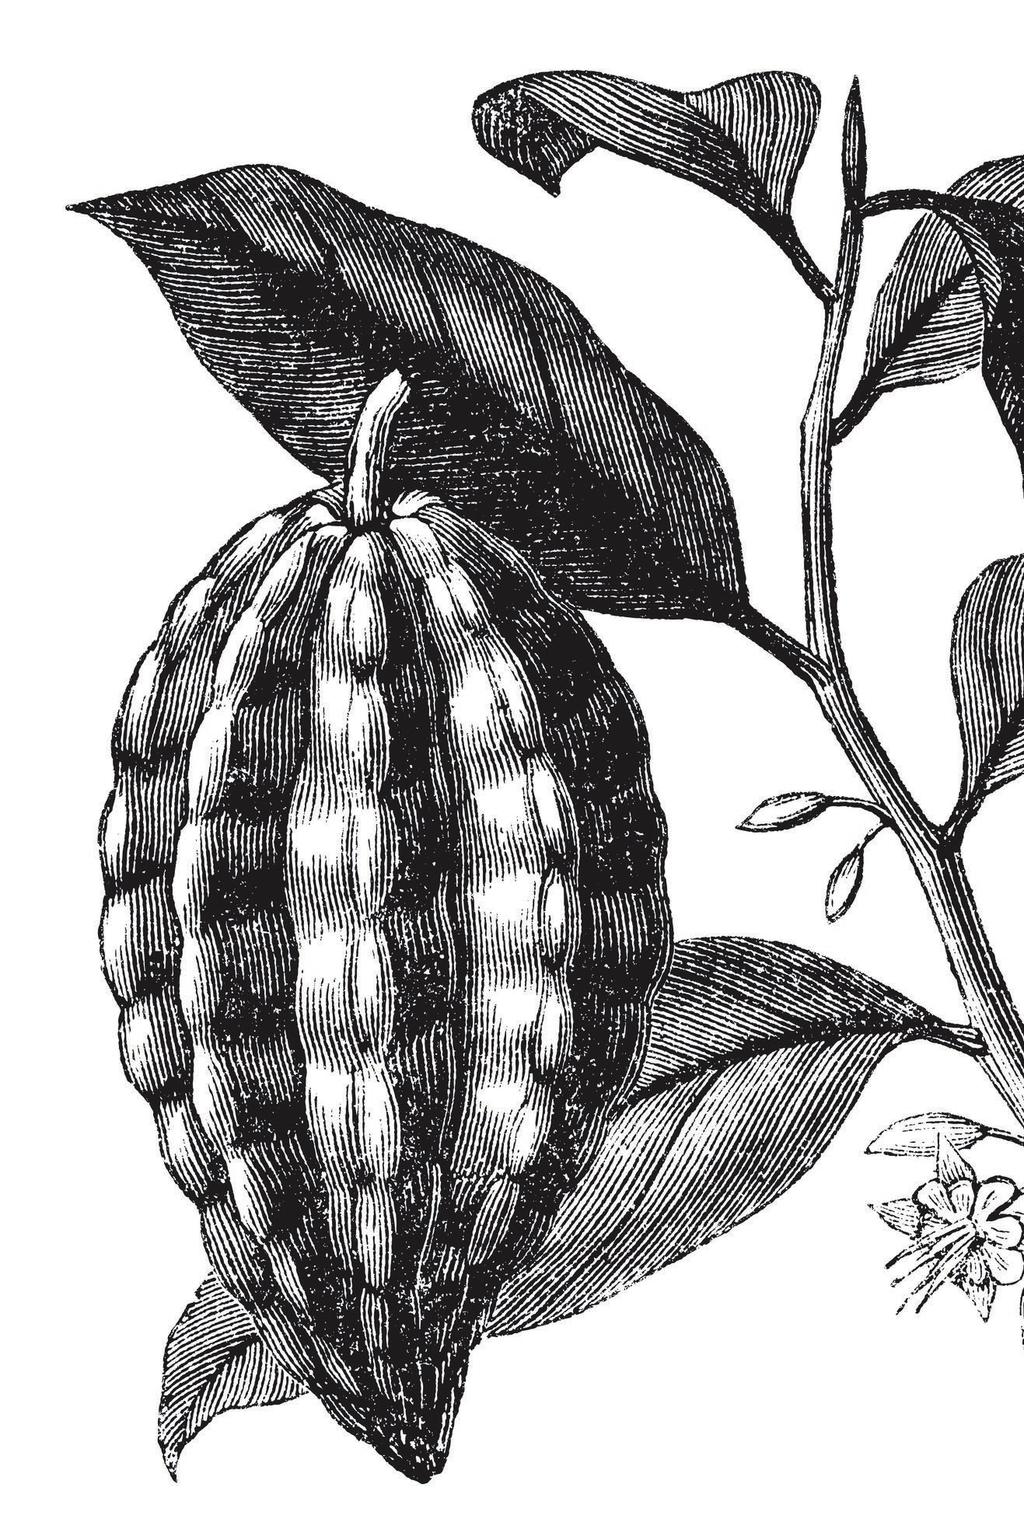 BESTE SORTEN BESTE QUALITÄT. CRIOLLO DER EDLE. TRINITARIO AUS TRINIDAD. FORASTERO DER FREMDLING. Criollo ist eine sehr zarte Kakaopflanze mit kleinen, meist rötlichen Früchten.